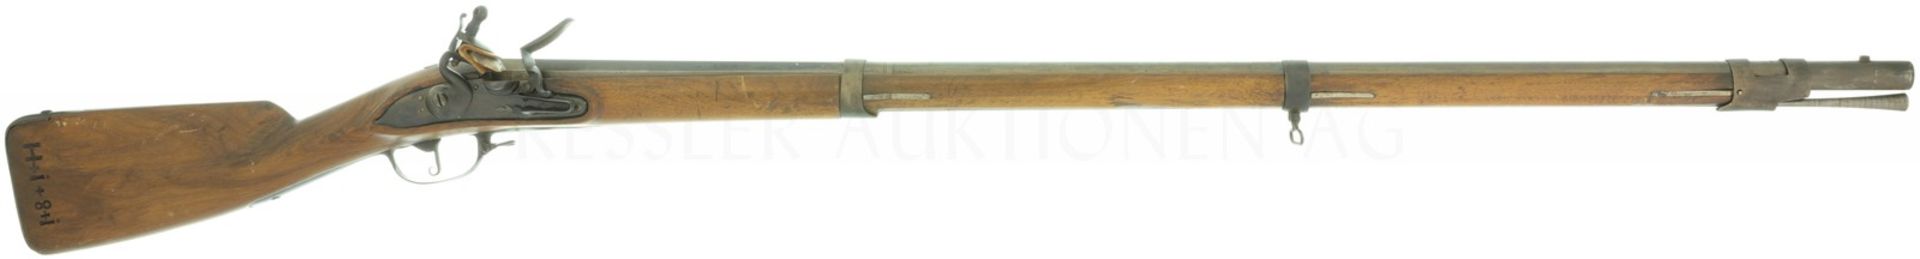 Steinschlossgewehr, um 1750, Kal. 17.6mm